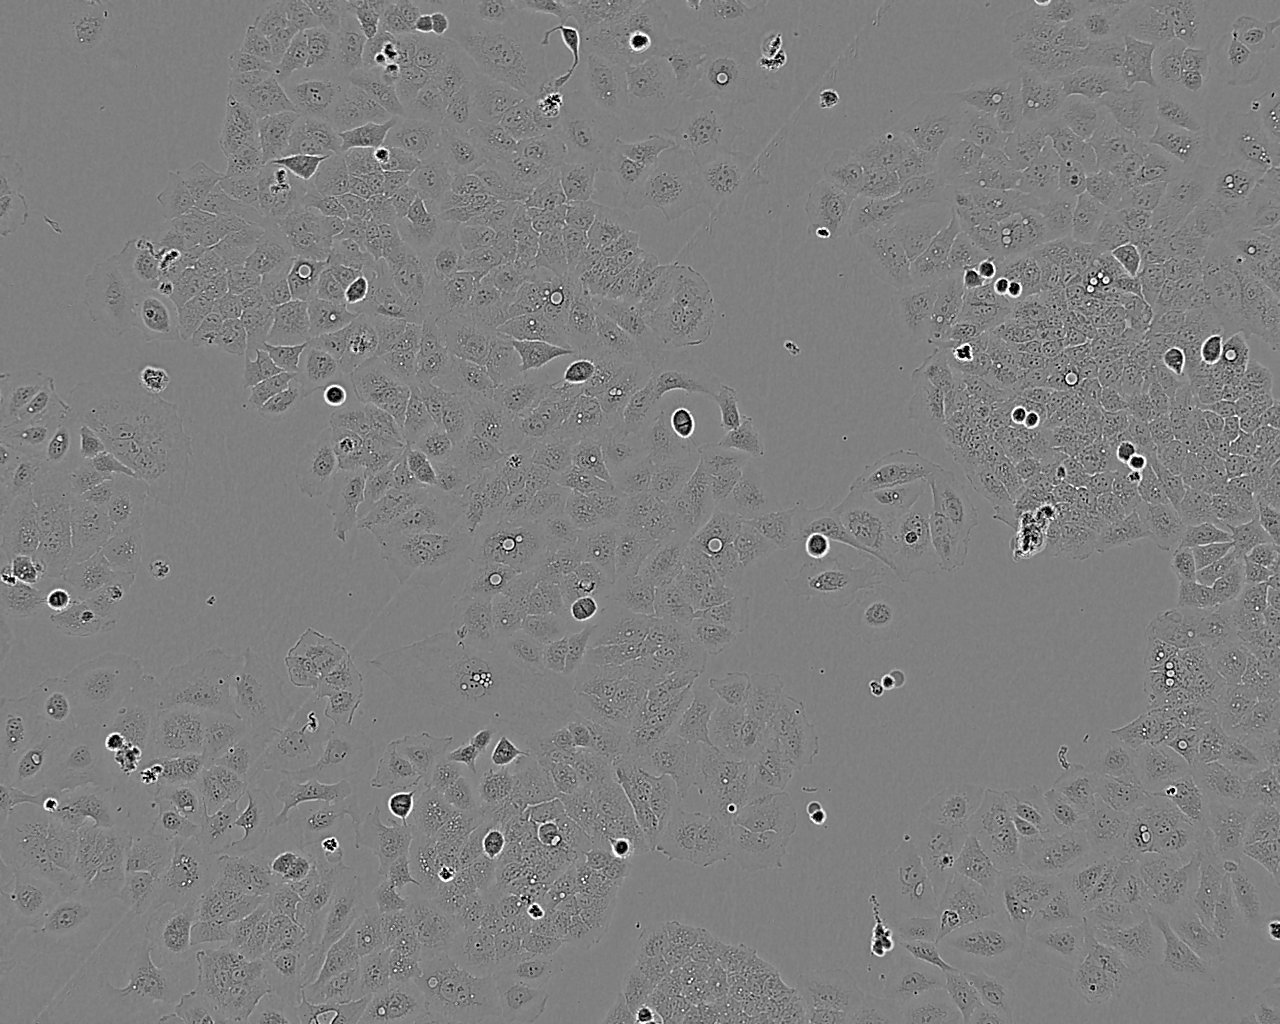 Y1 Cell:小鼠肾上腺皮质瘤细胞系,Y1 Cell